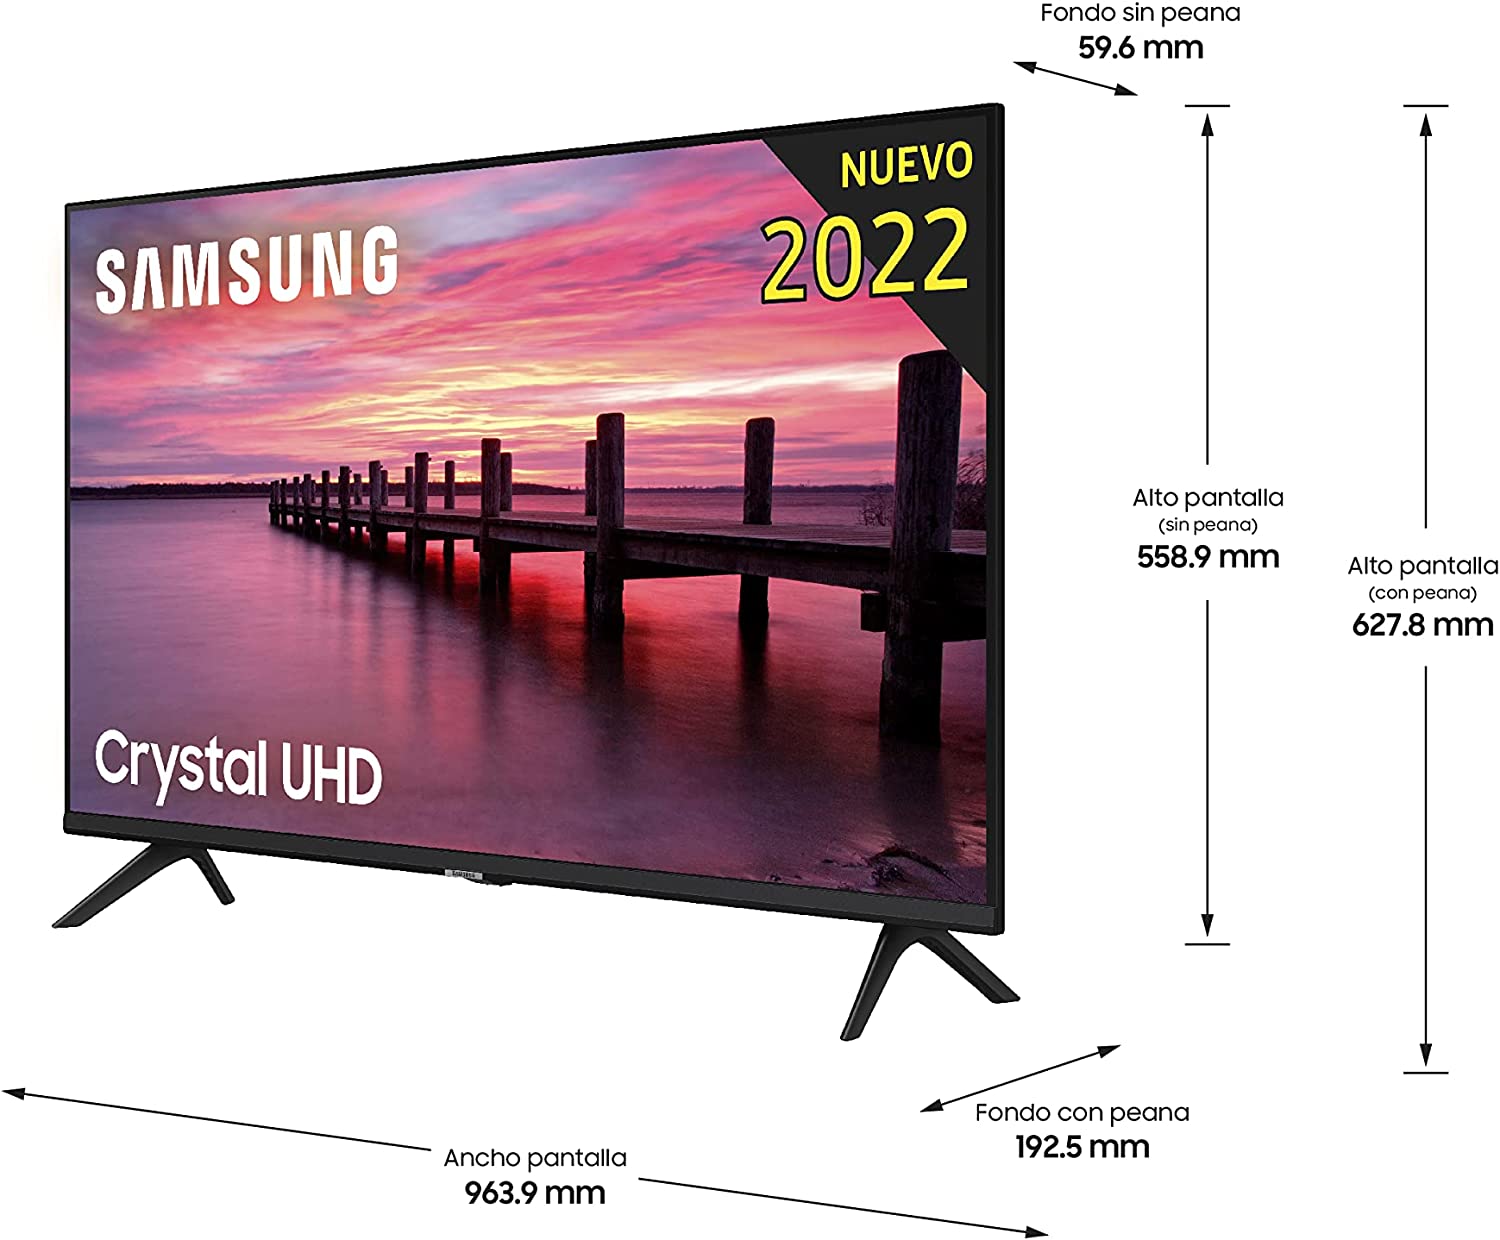 Samsung Crystal UHD 2022 43AU7095 - Smart TV de 43, HDR 10+, Procesador 4K,  PurColor, Sonido Inteligente, Función One Remote Control. Compatible con  Alexa y Asistentes de Voz. : : Electrónica